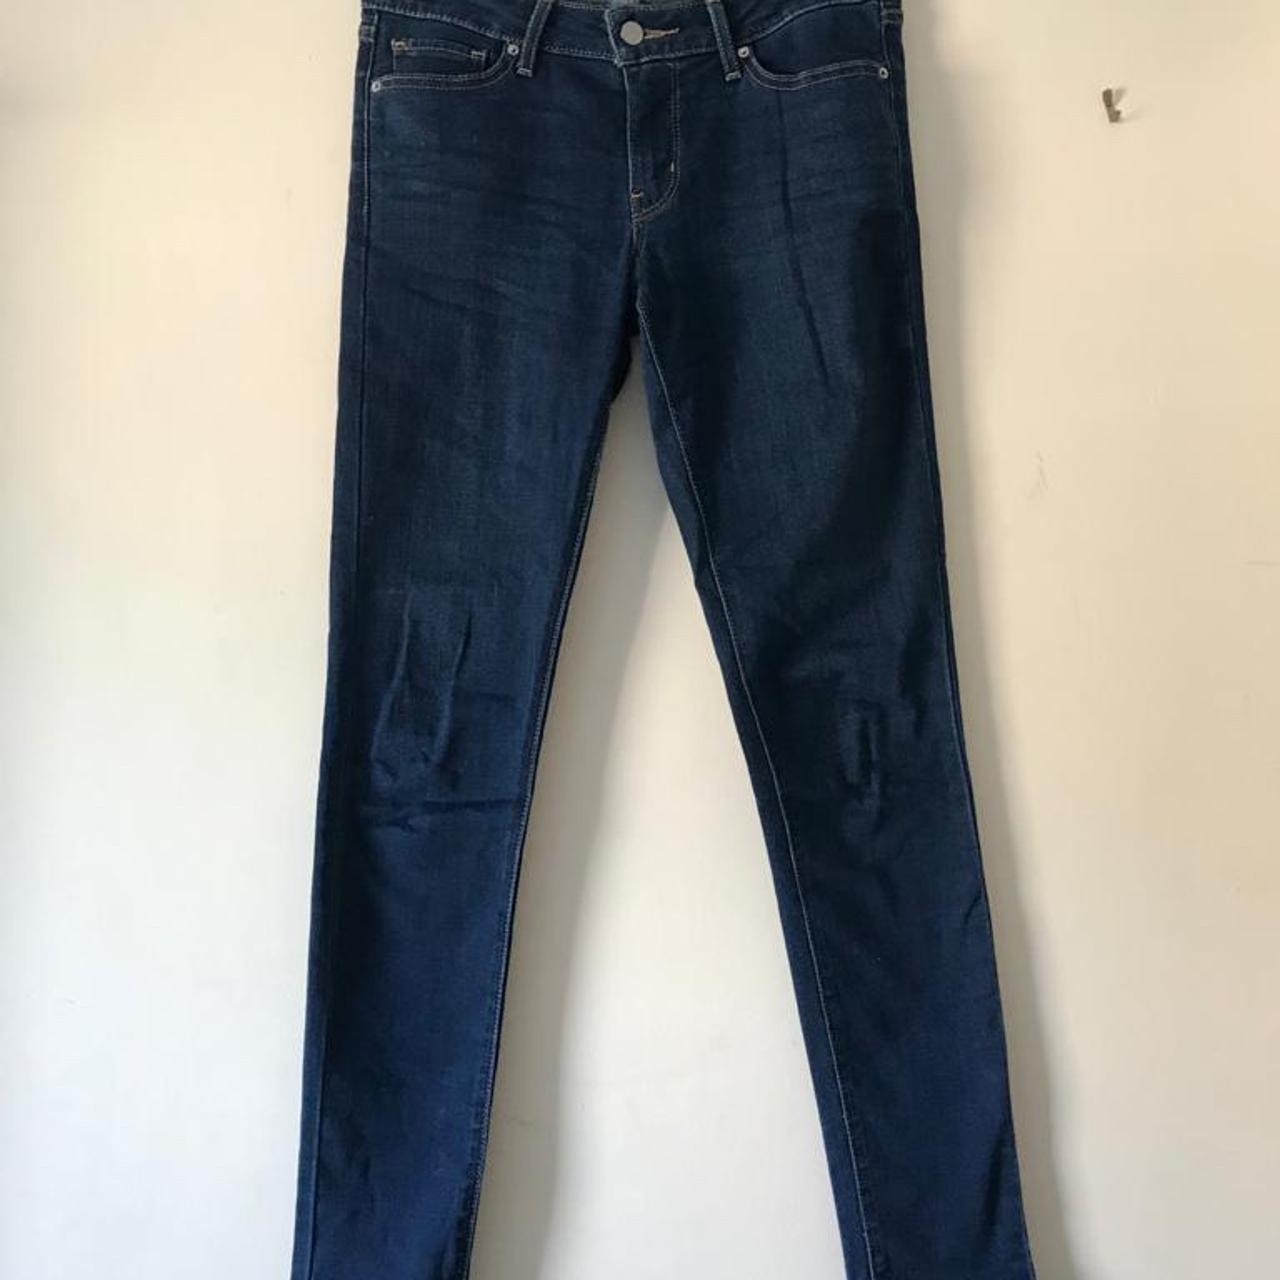 Excellent condition Levis 711 skinny jeans W26 L32... - Depop